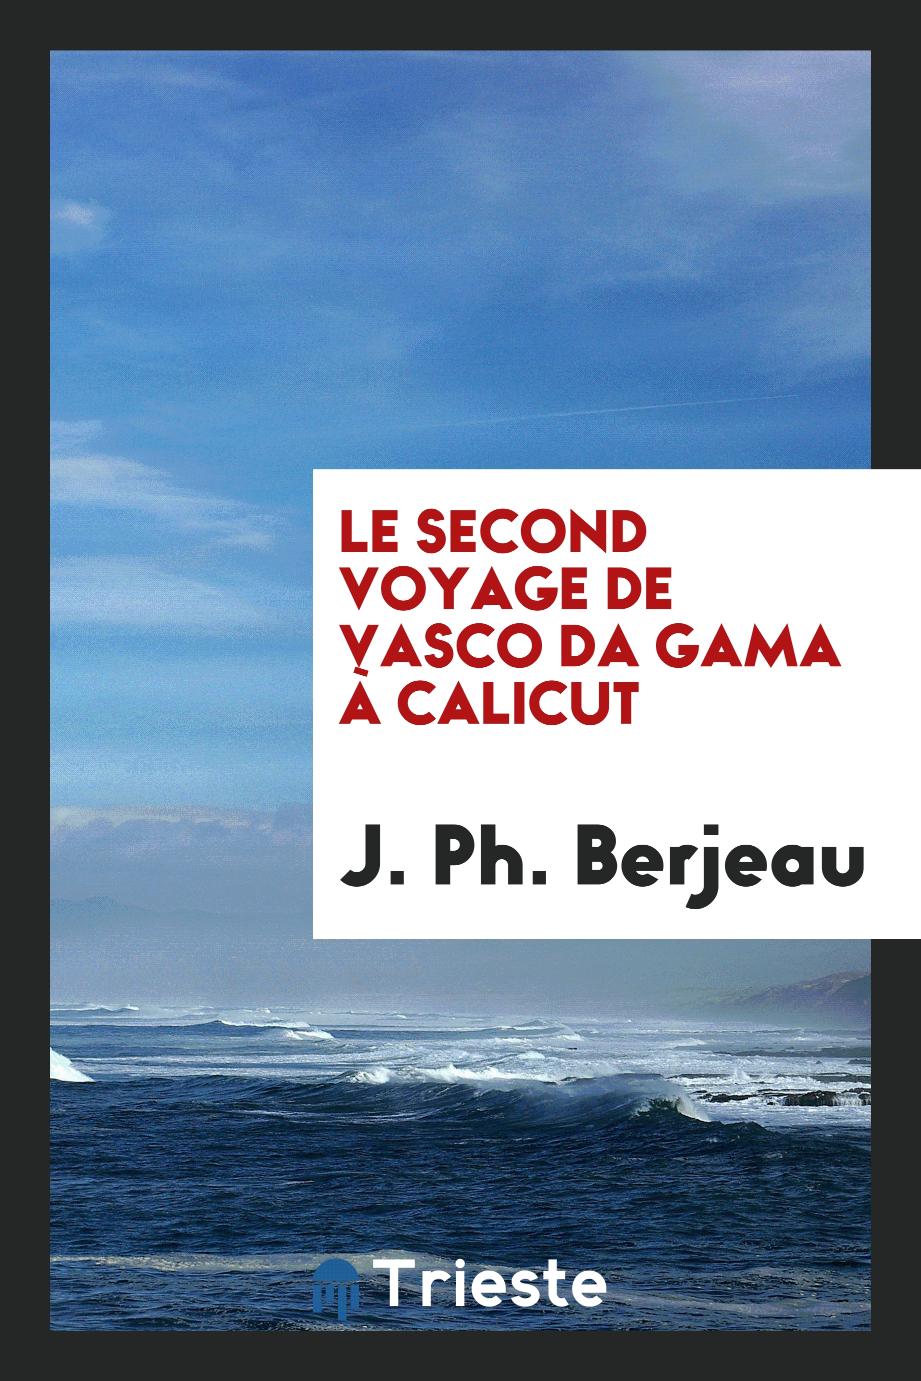 J. Ph. Berjeau - Le second voyage de Vasco da Gama à Calicut